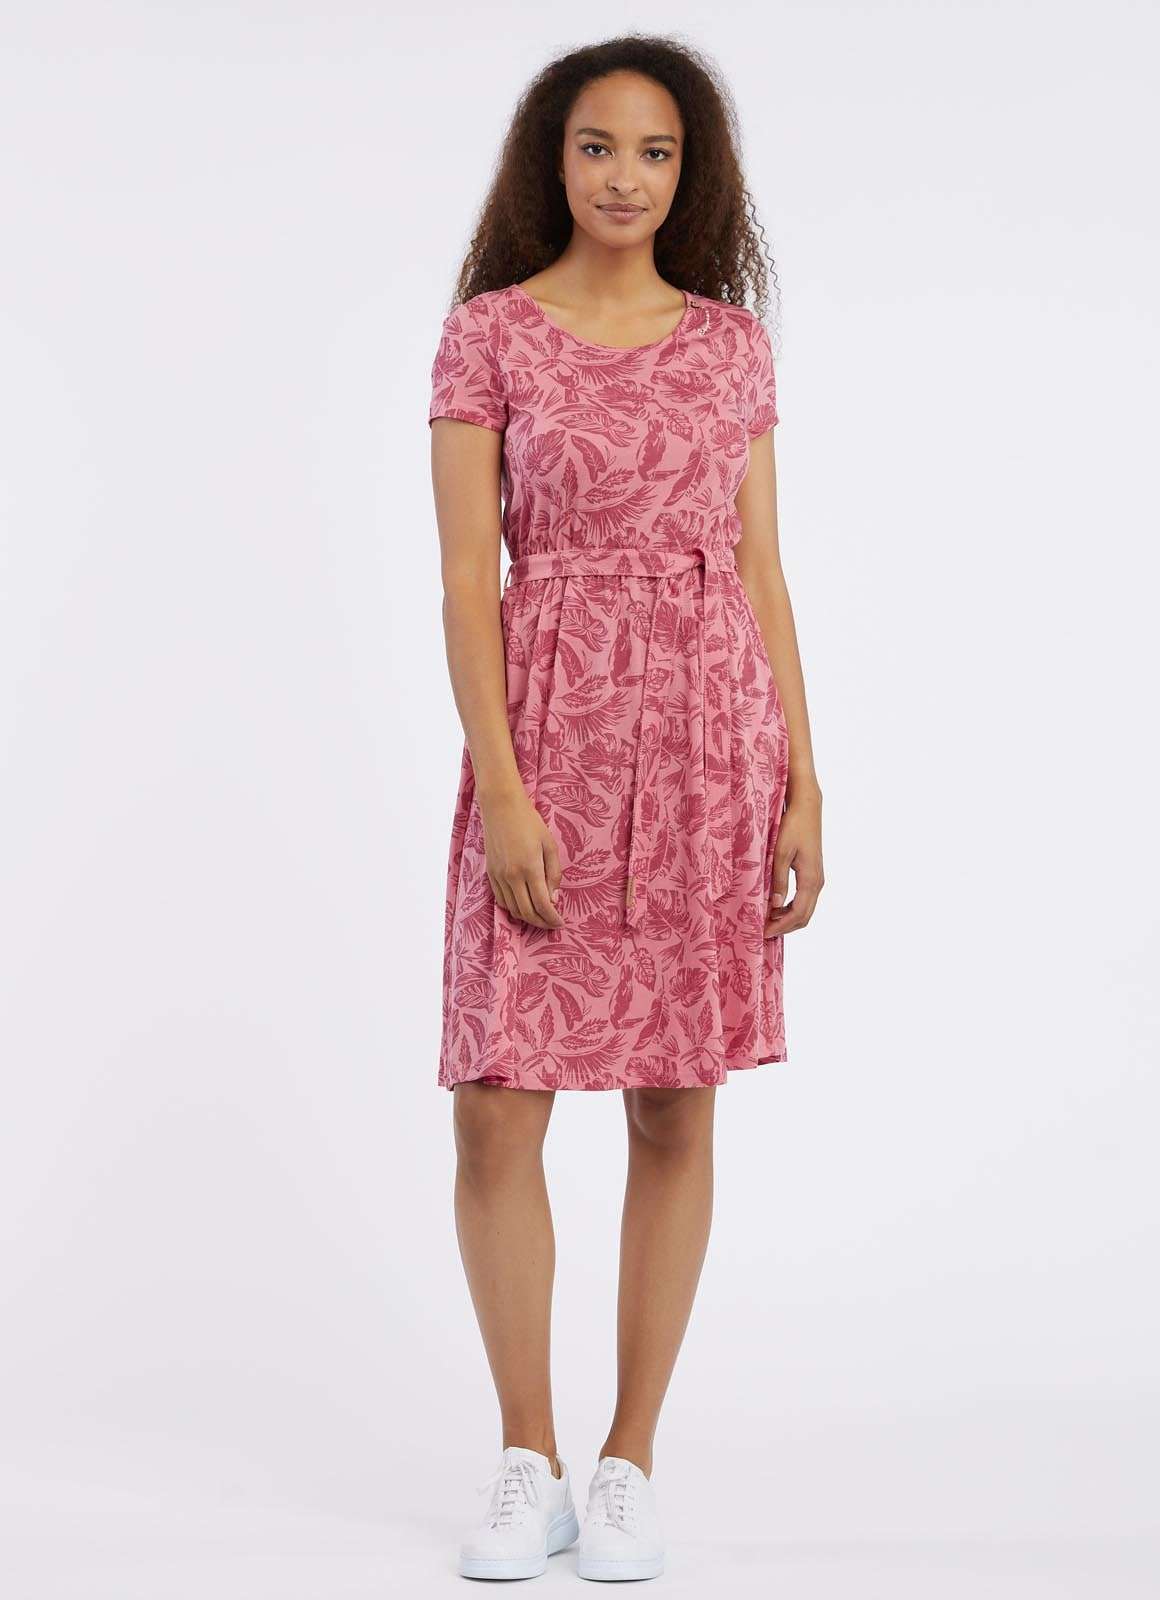 Мини-платье с поясом на талии и цветочным принтом по всей поверхности.